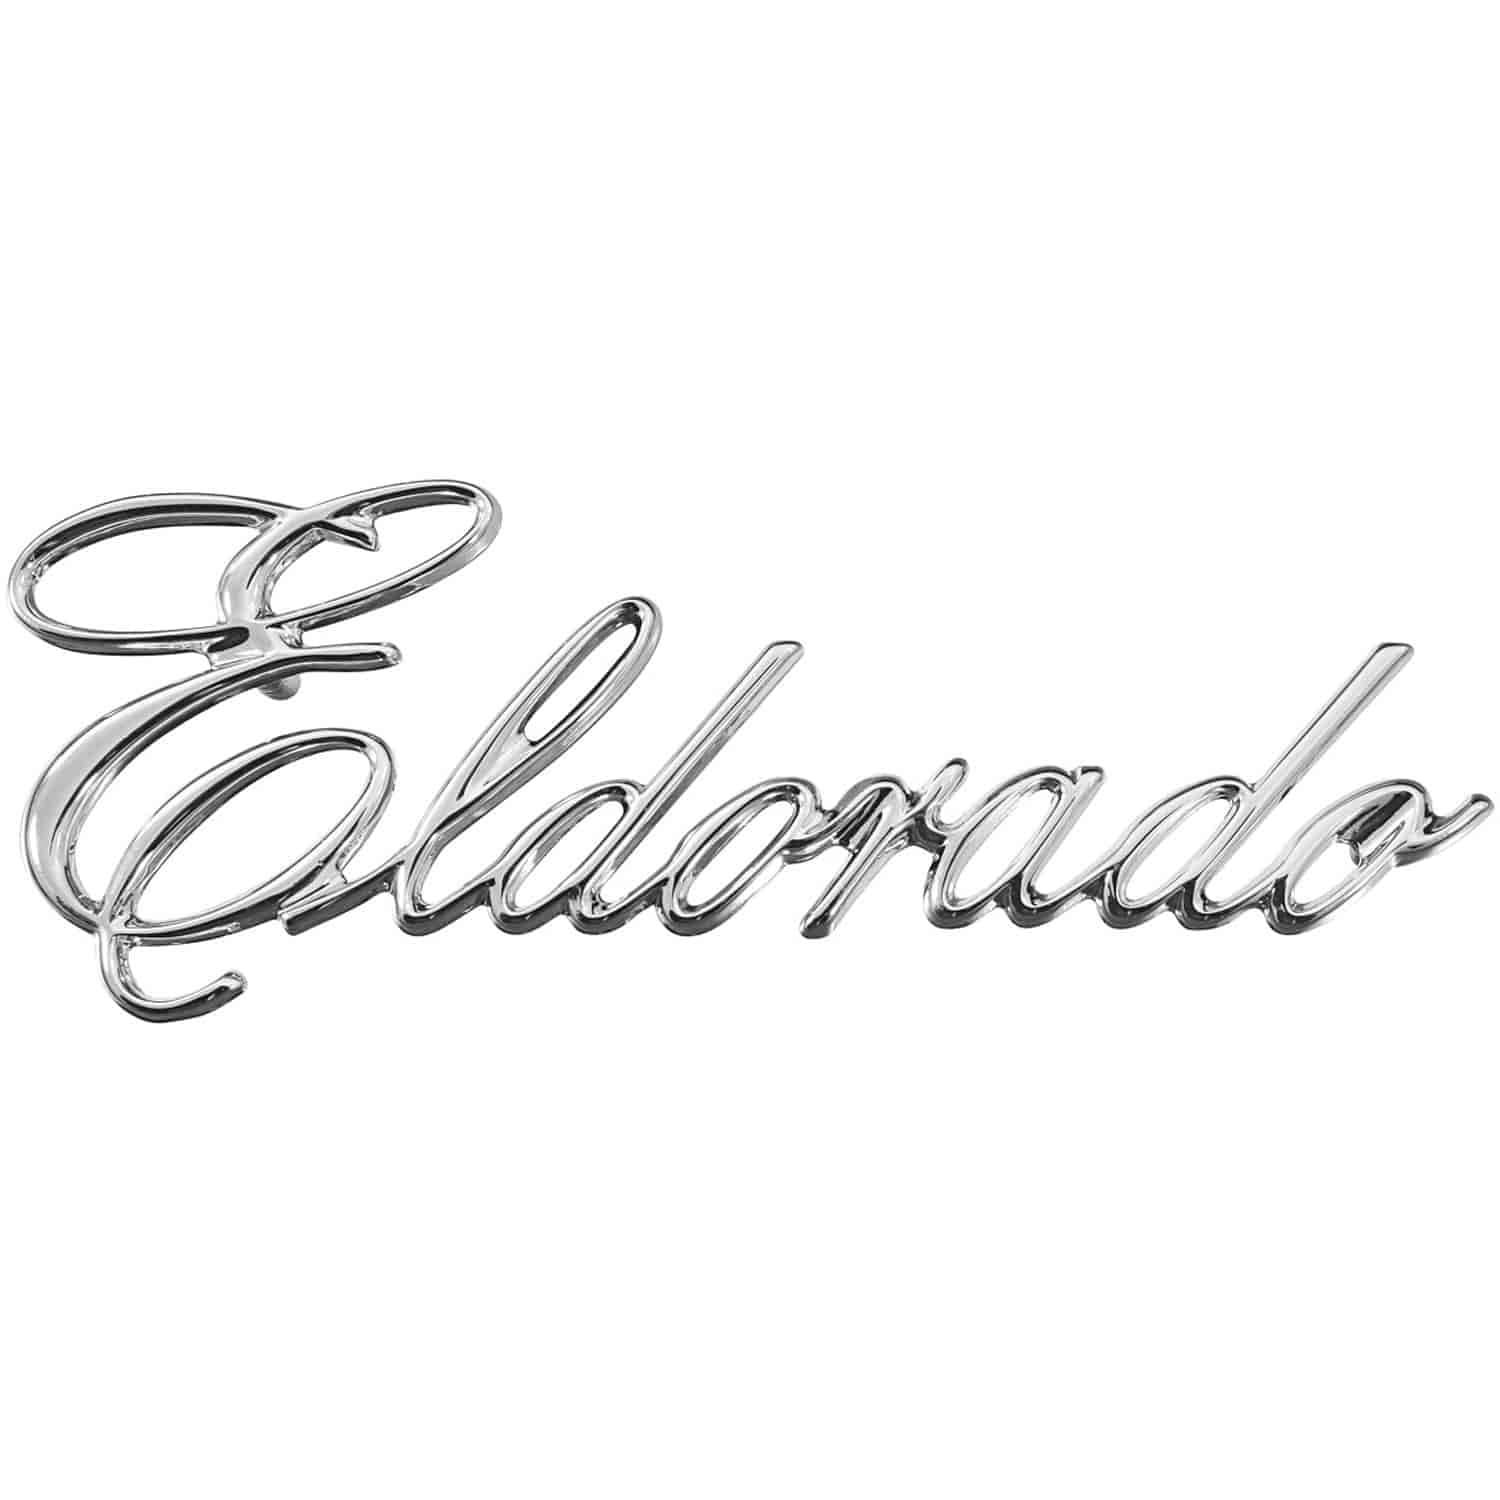 Emblem 1975-76 Eldorado Quarter Panel Script